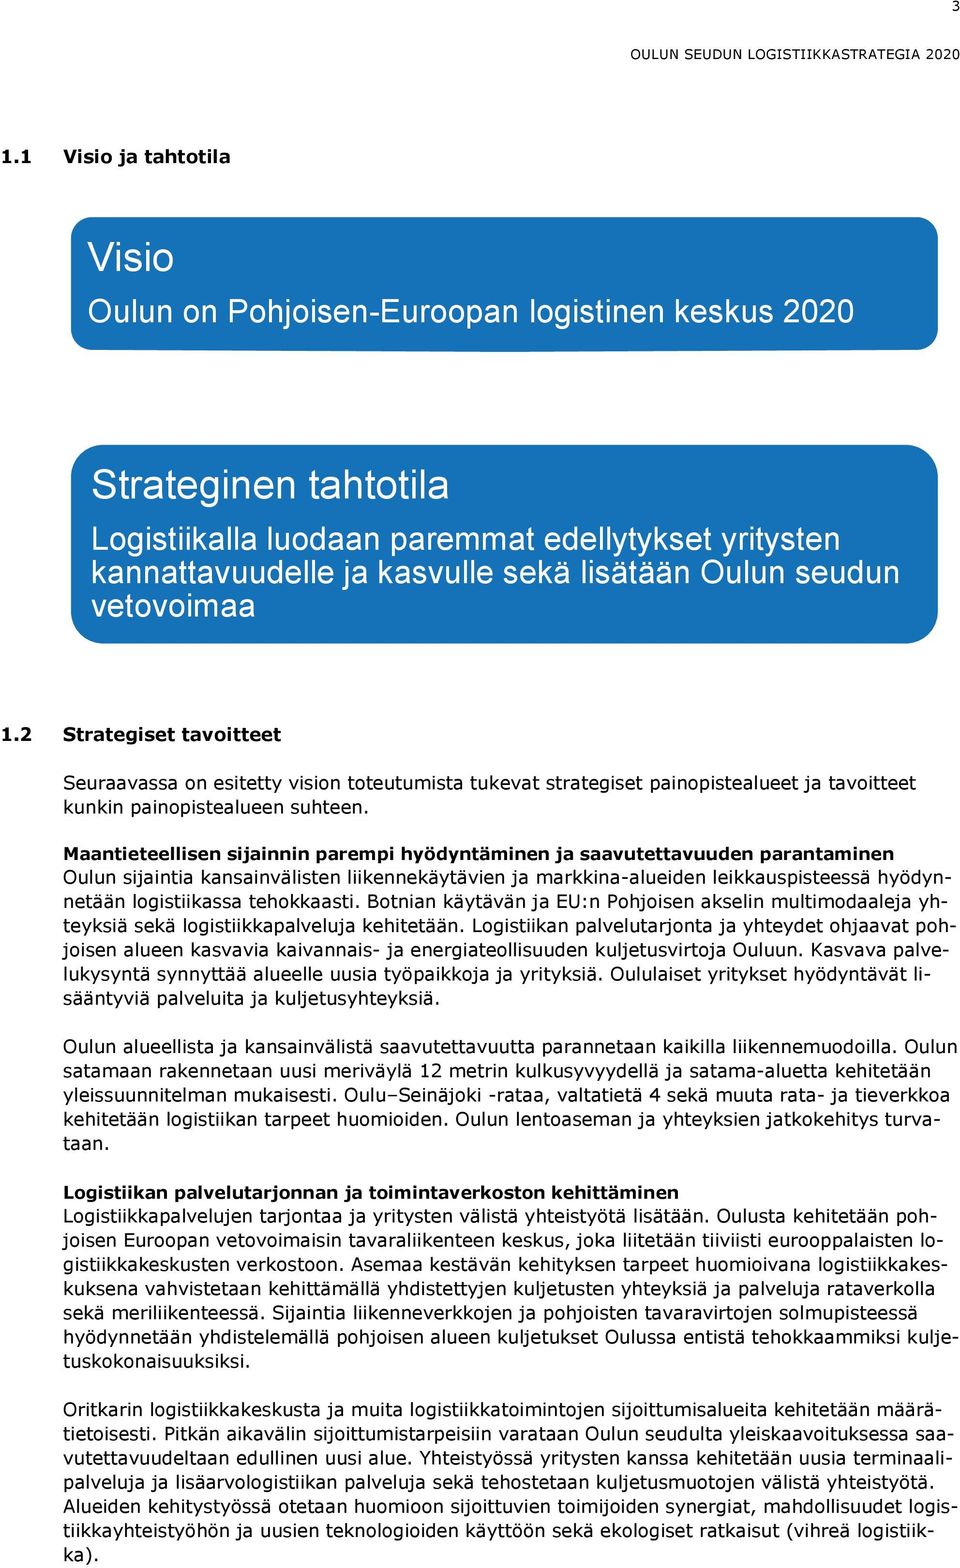 Oulun seudun vetovoimaa 1.2 Strategiset tavoitteet Seuraavassa on esitetty vision toteutumista tukevat strategiset painopistealueet ja tavoitteet kunkin painopistealueen suhteen.